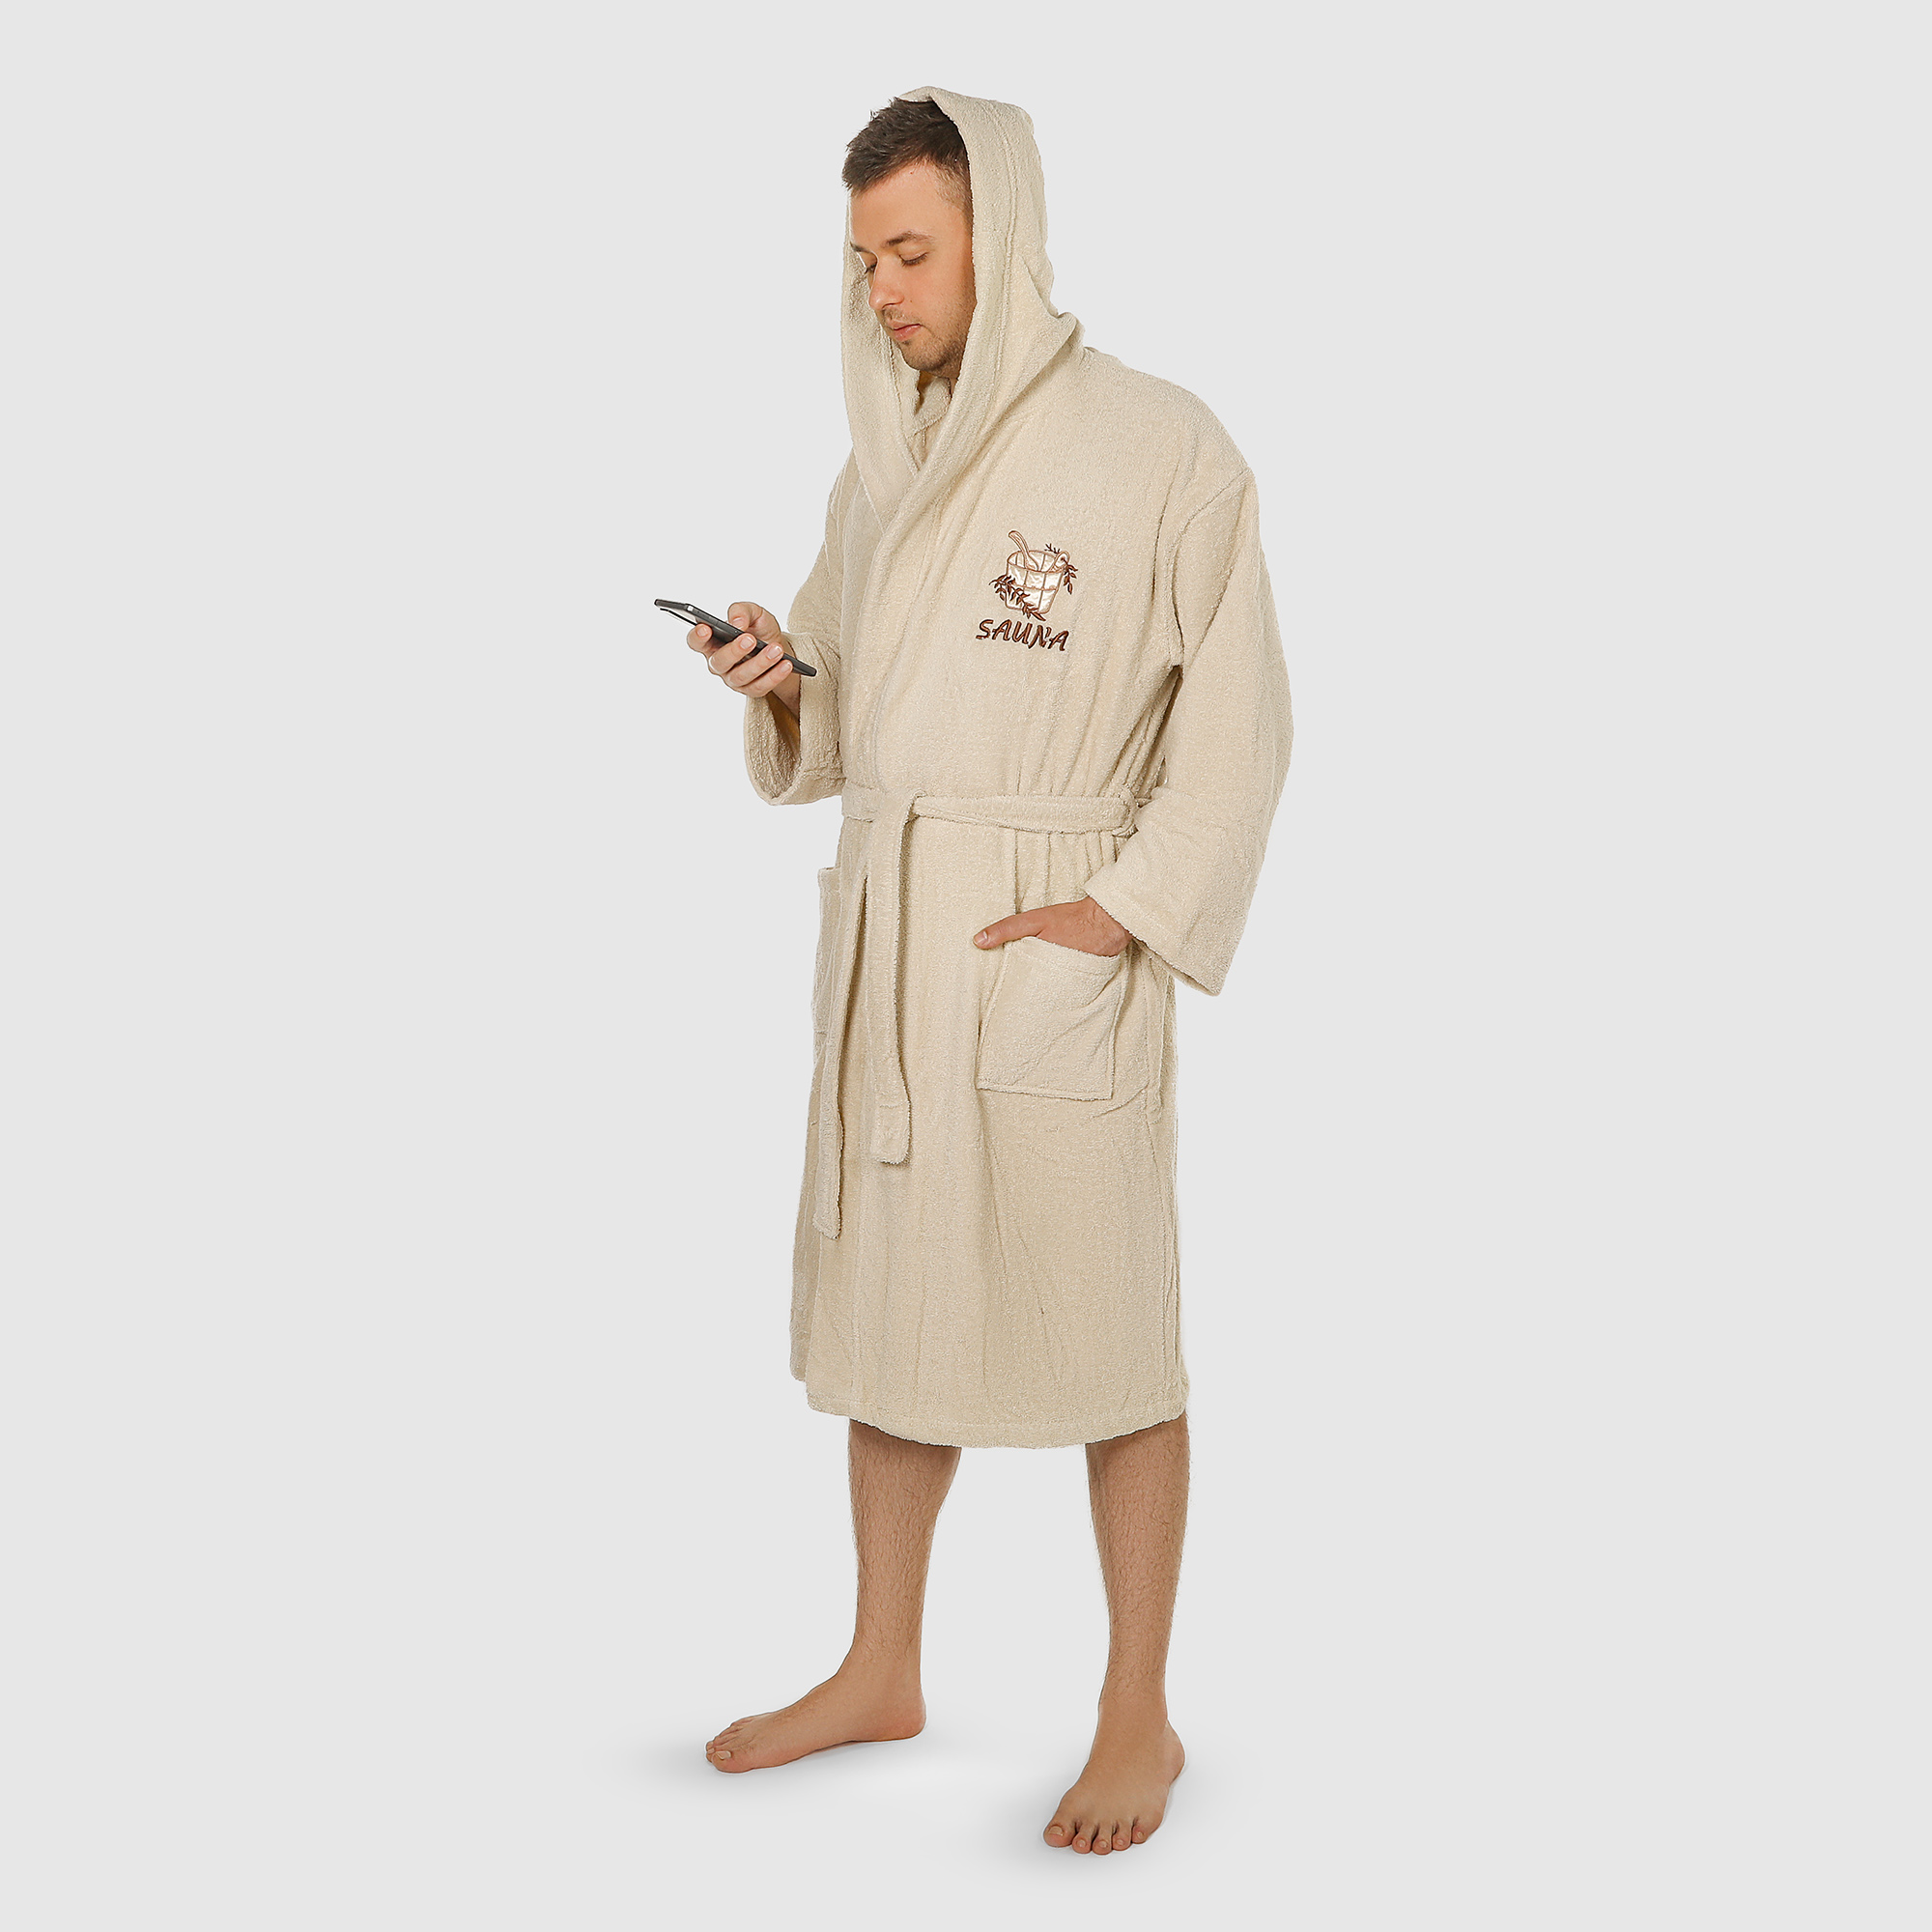 Халат мужской Asil Sauna brown XL махровый с капюшоном халат мужской asil sauna brown xl махровый с капюшоном